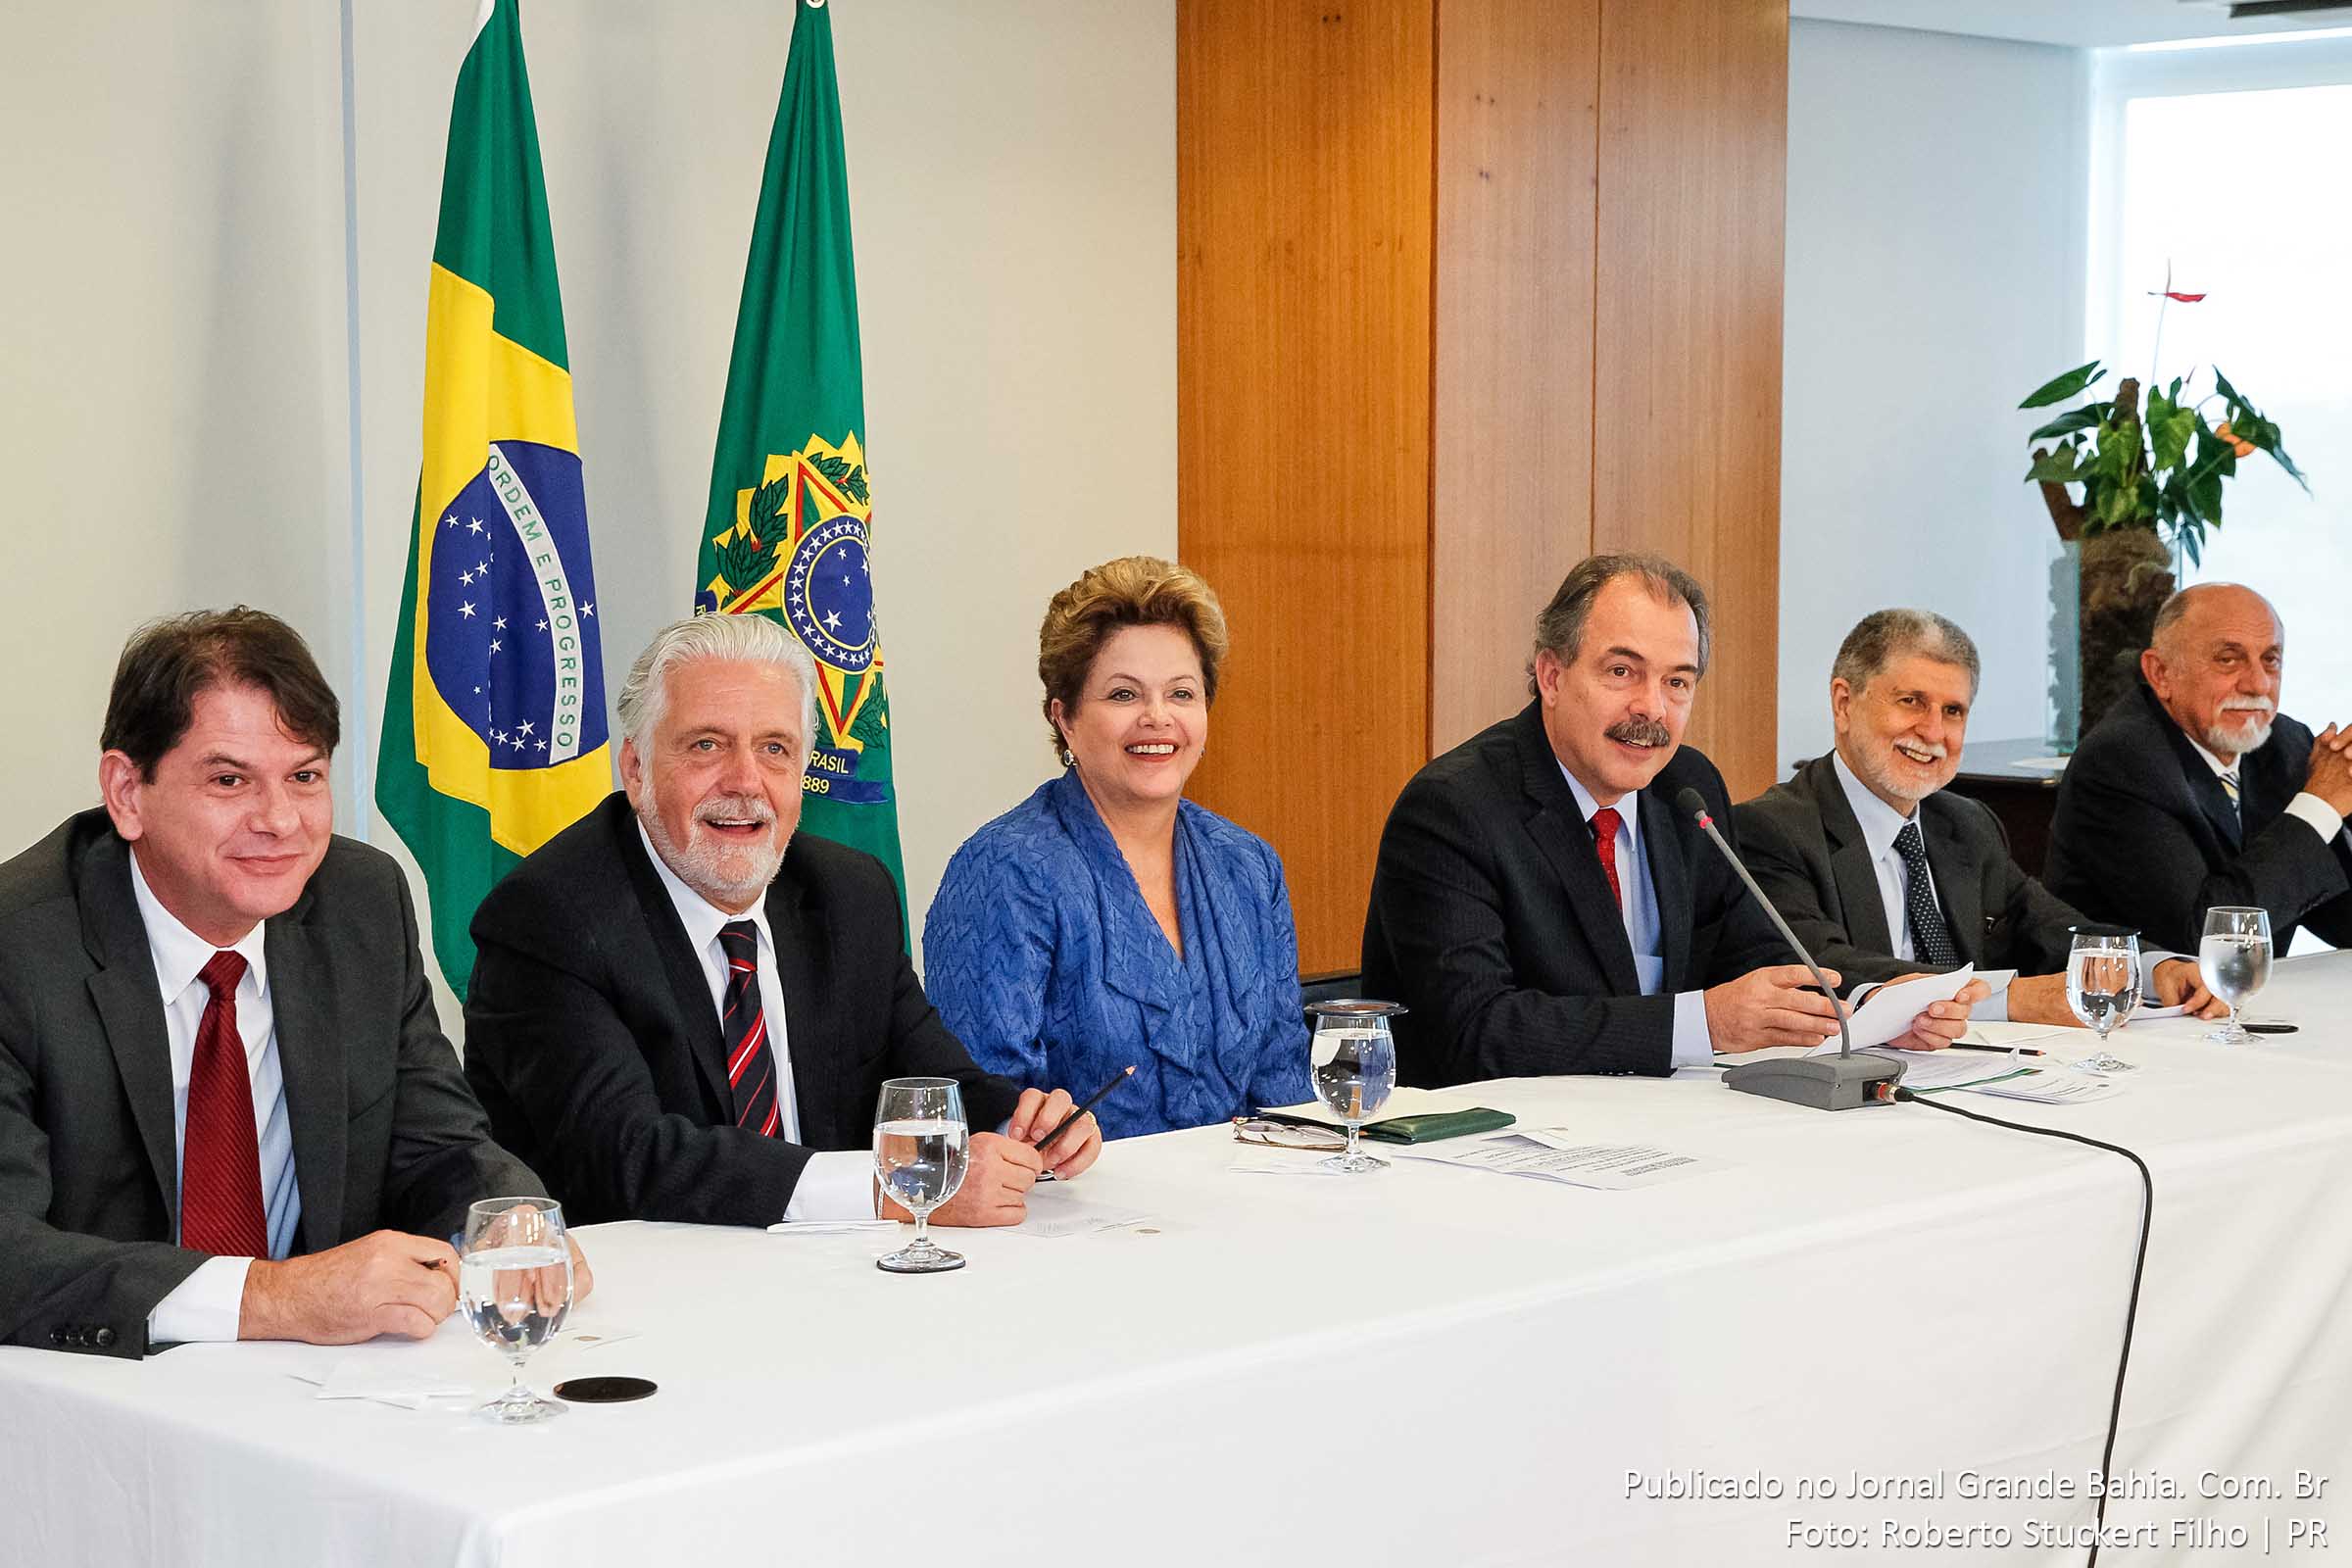 Presidenta Dilma Rousseff, Governador do Ceará, Cid Gomes e o Governador da Bahia, Jaques Wagner durante sanção das leis que criam as Universidades Federais do sul da Bahia (UFESBA), do oeste da Bahia (UFOB), do sul e sudeste do Pará (UNIFESSPA) e do Cariri/CE (UFCA).